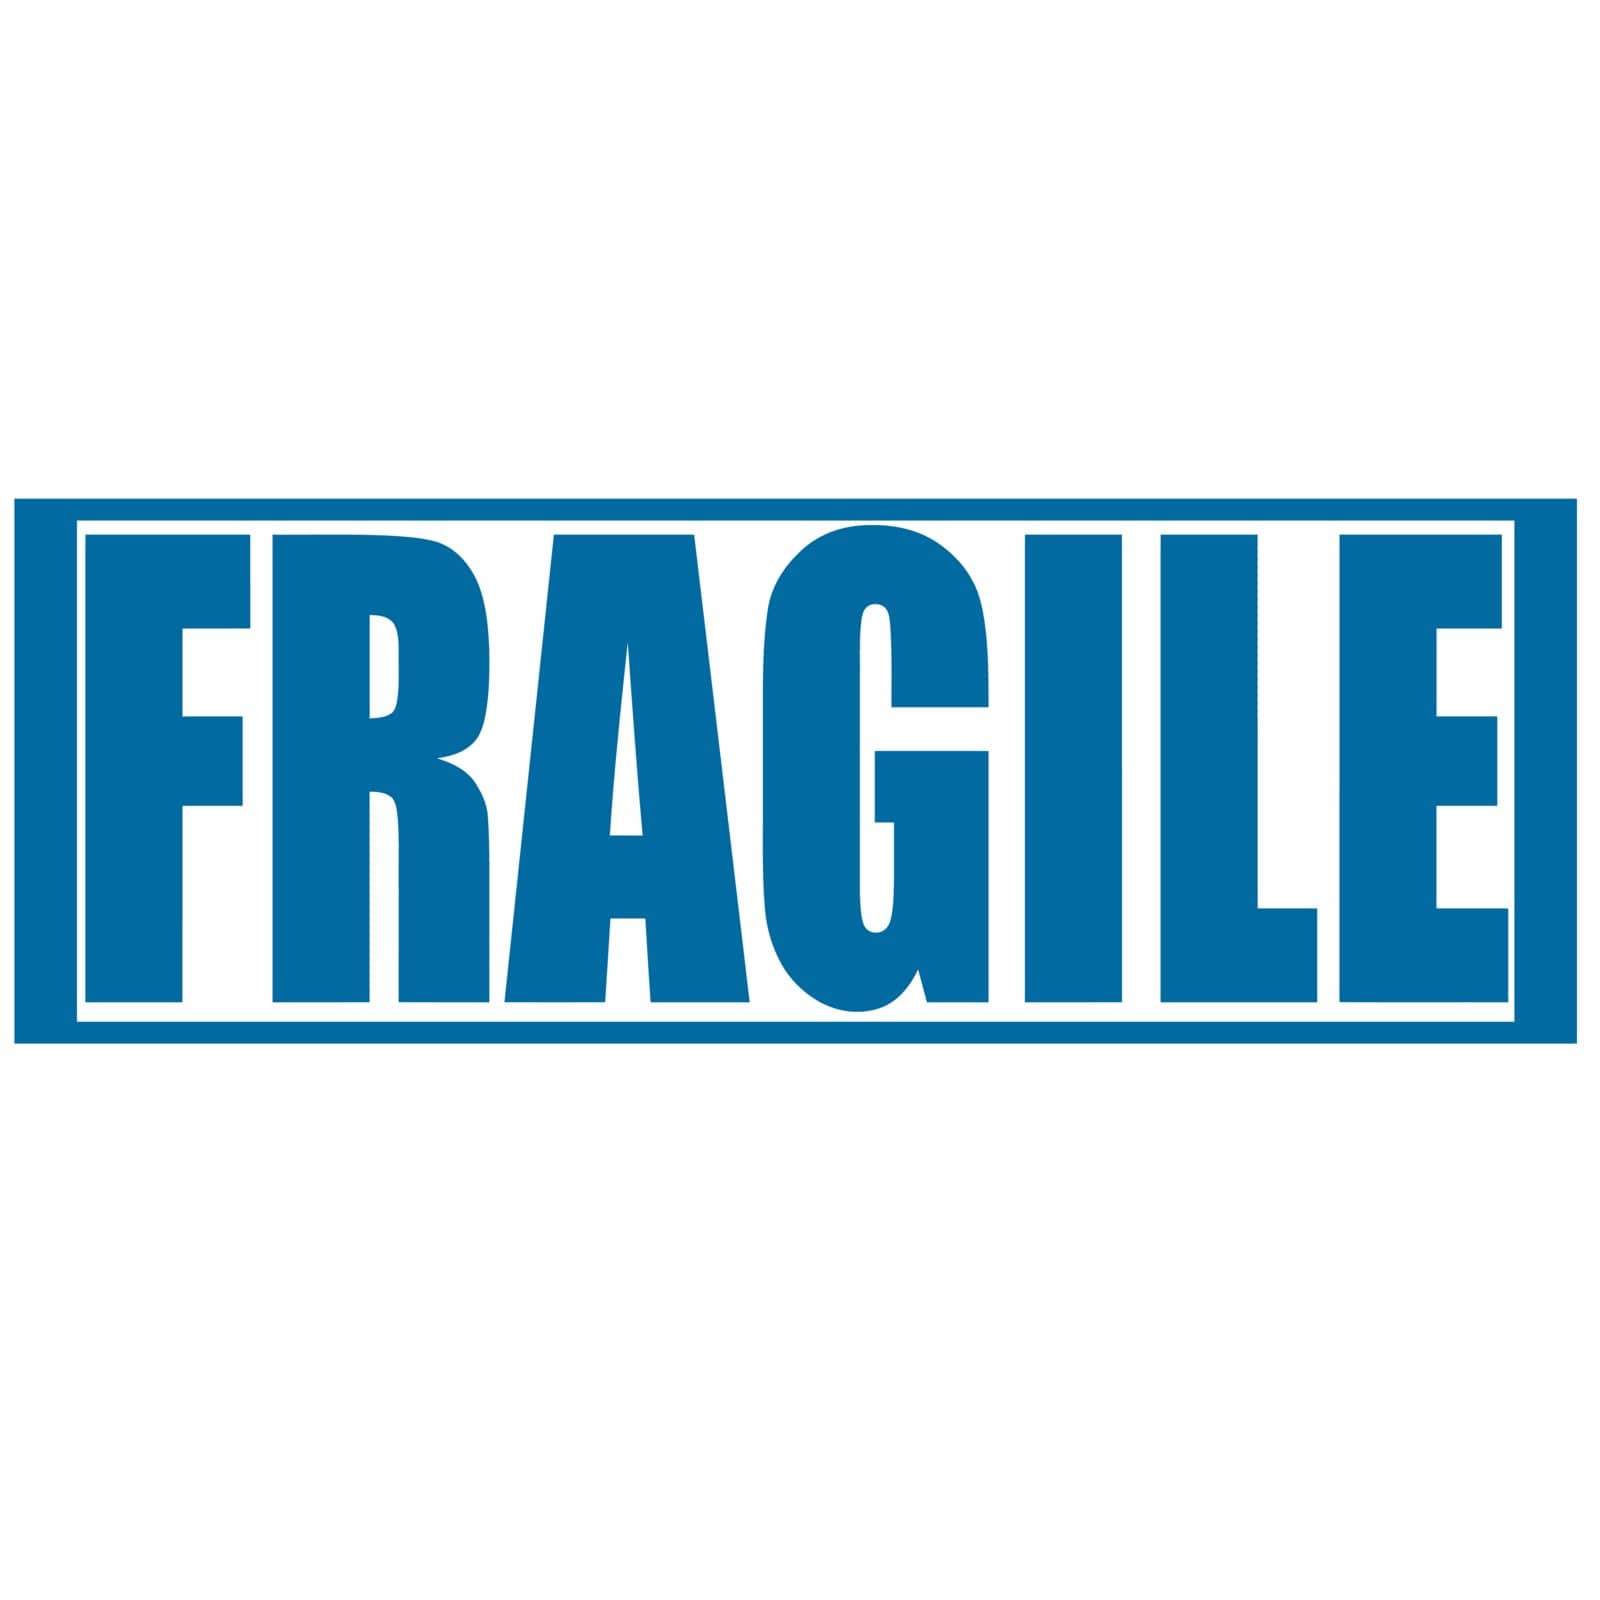 Fragile by carmenbobo